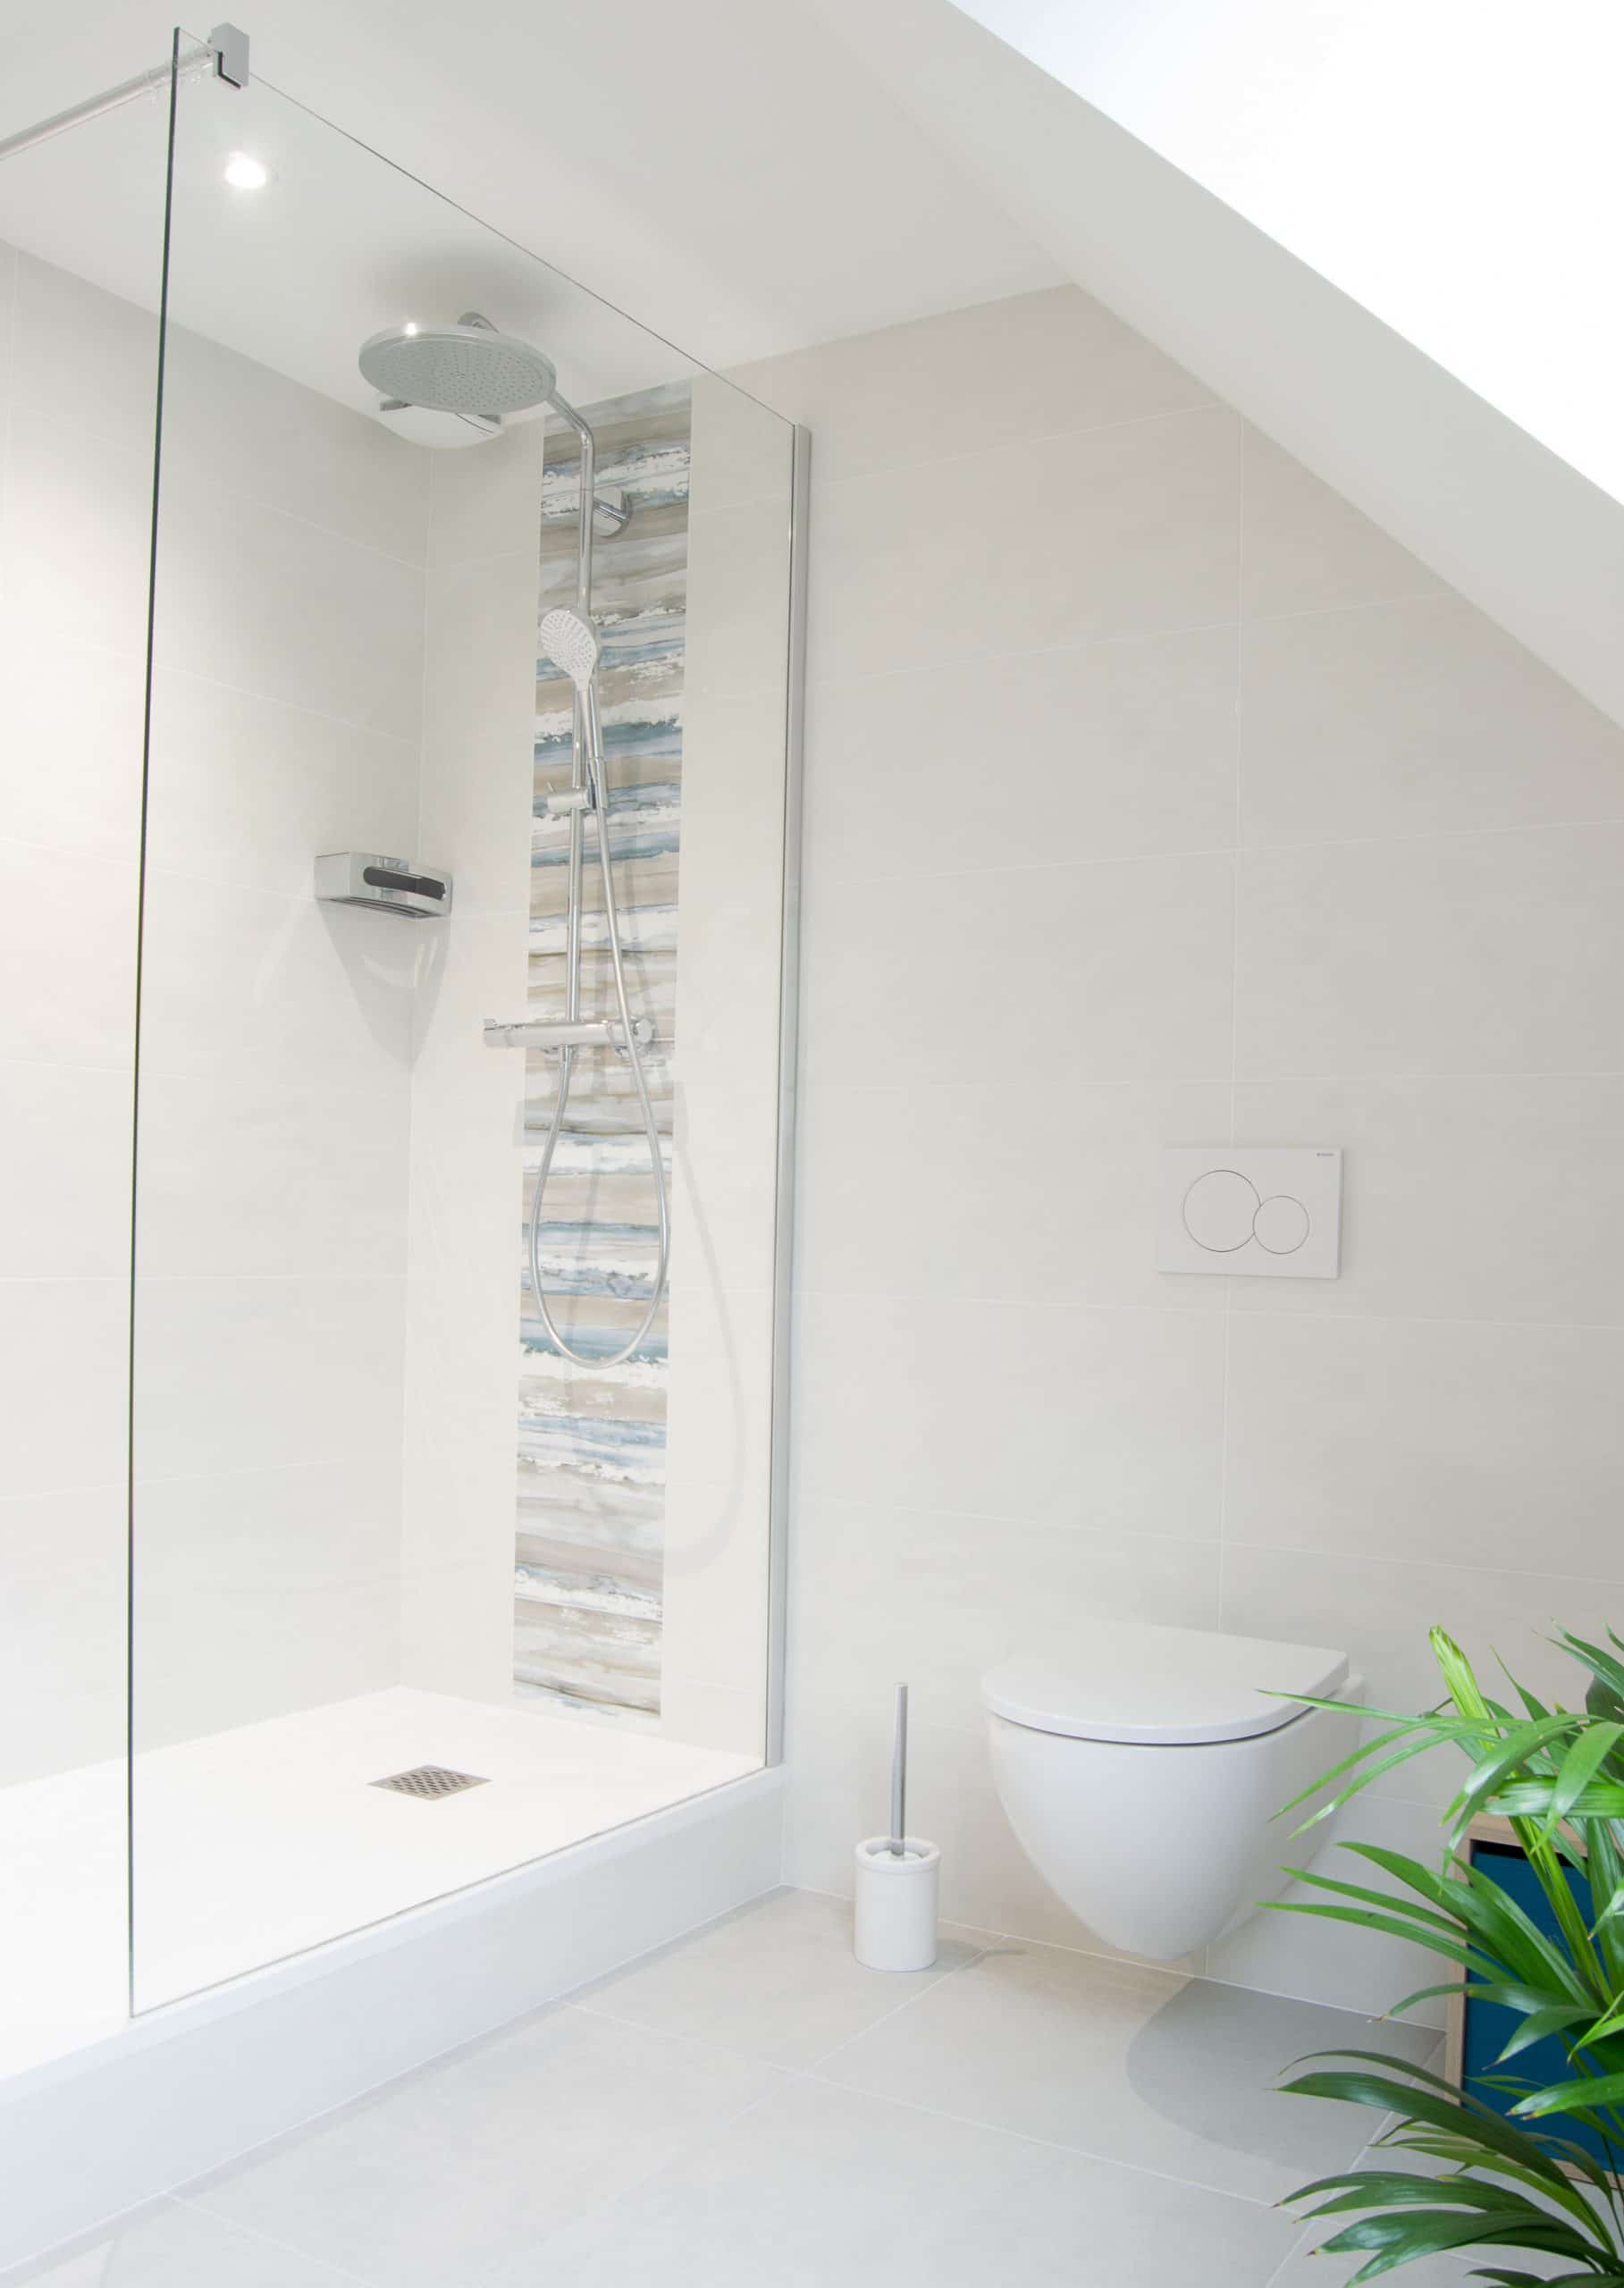 Salle de bain bois clair wc suspendus